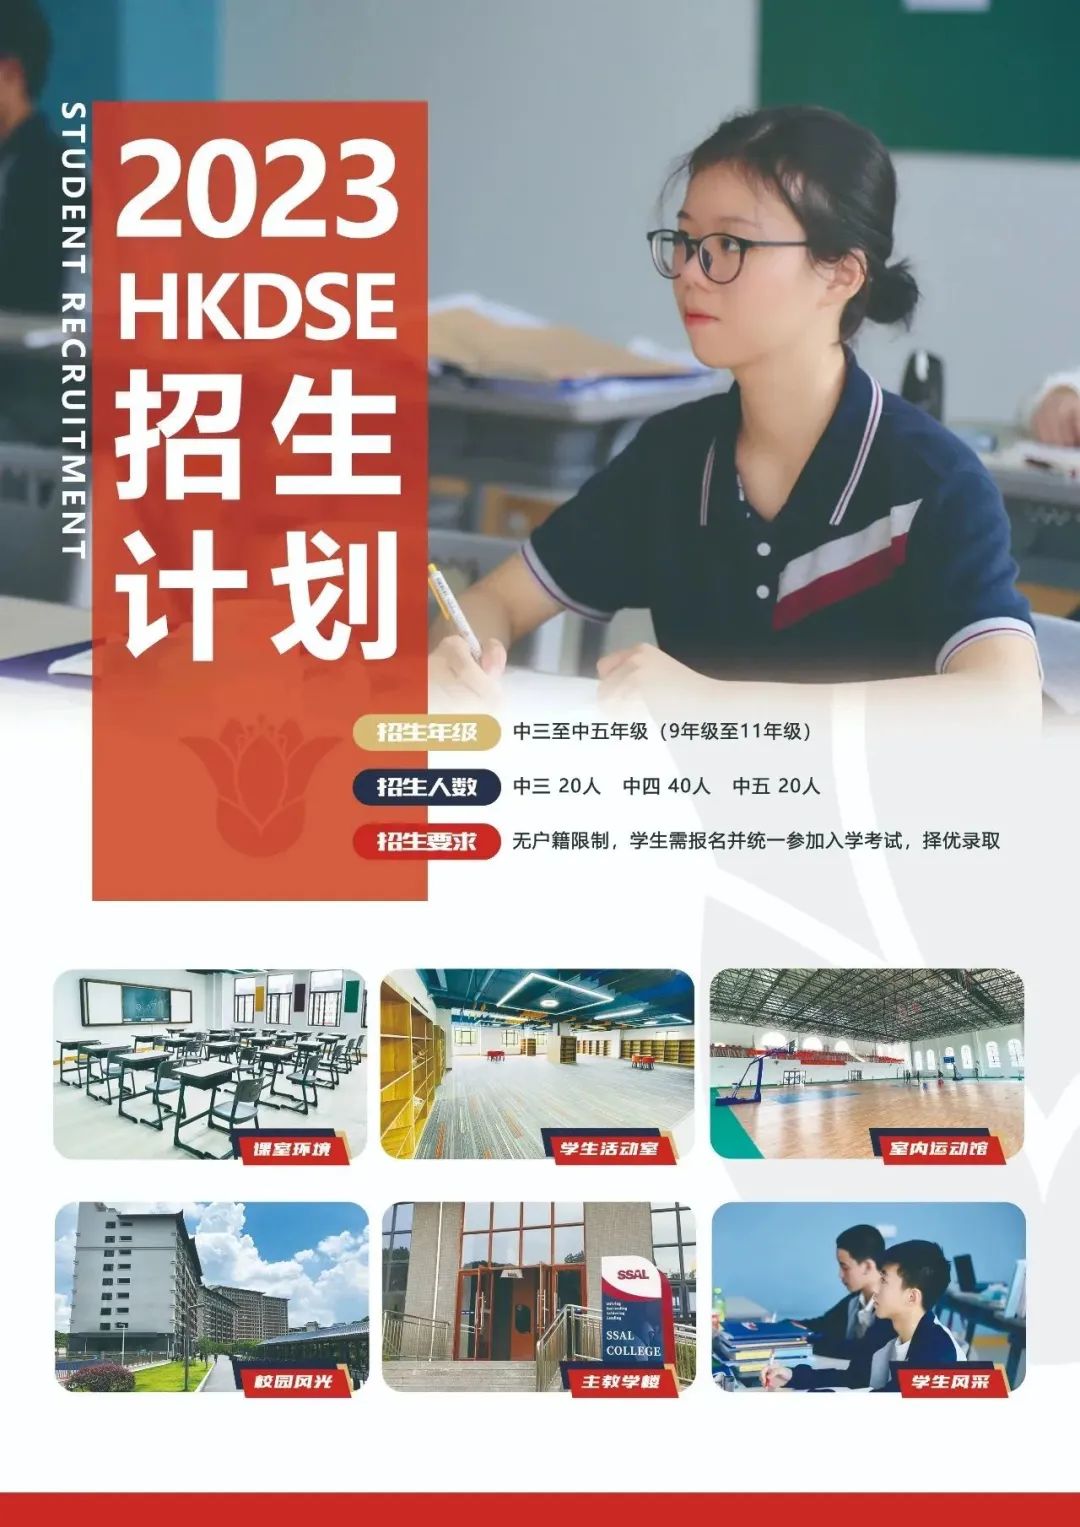 2023年SSAL - HKDSE国际课程春季招生简章